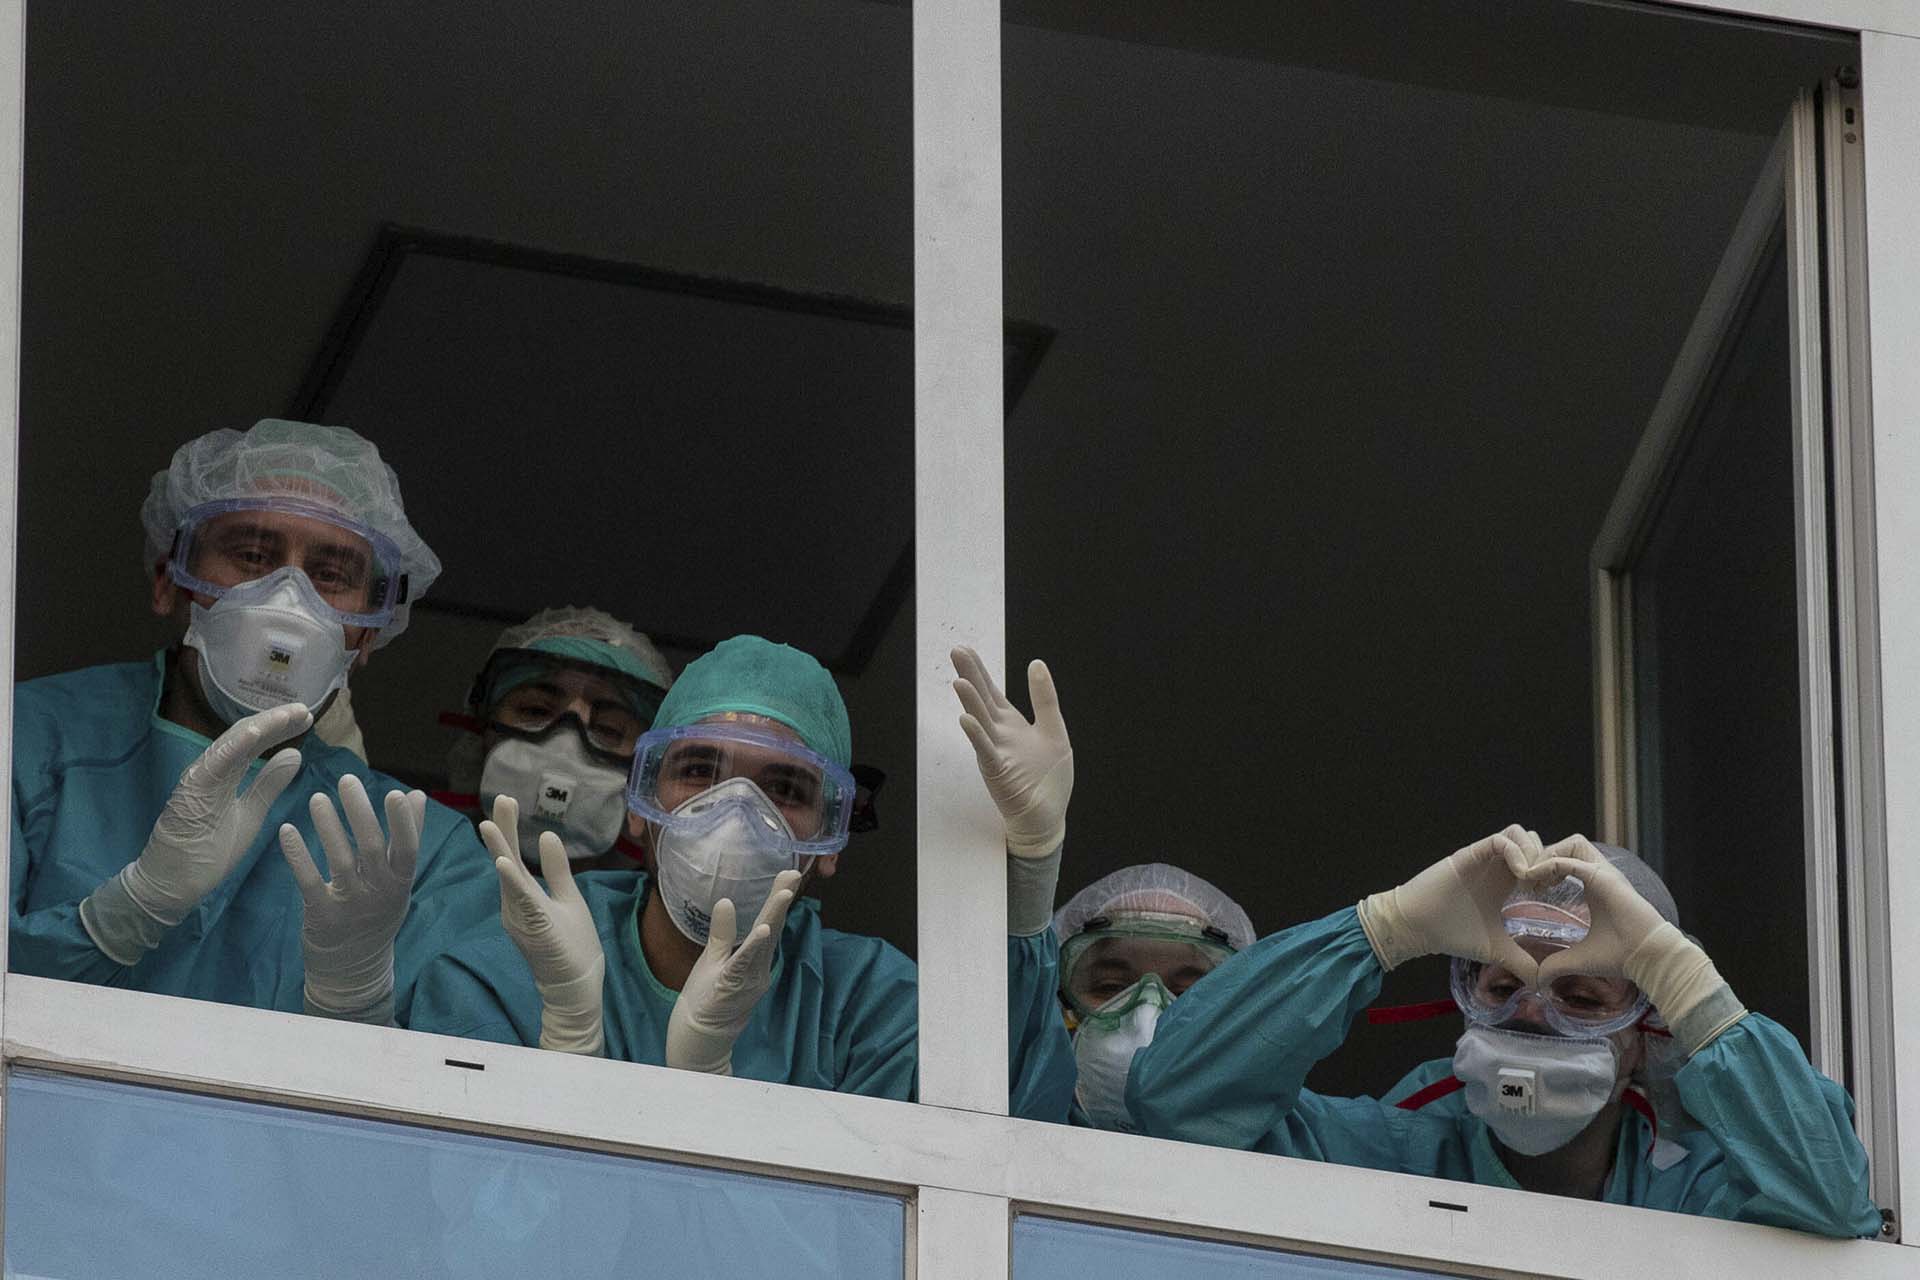 Trabajadores de la salud reaccionan a los aplausos de quienes les agradecen por su trabajo en la Fundación Universitaria Jimenez Diaz en Madrid, España (AP Photo/Manu Fernandez)